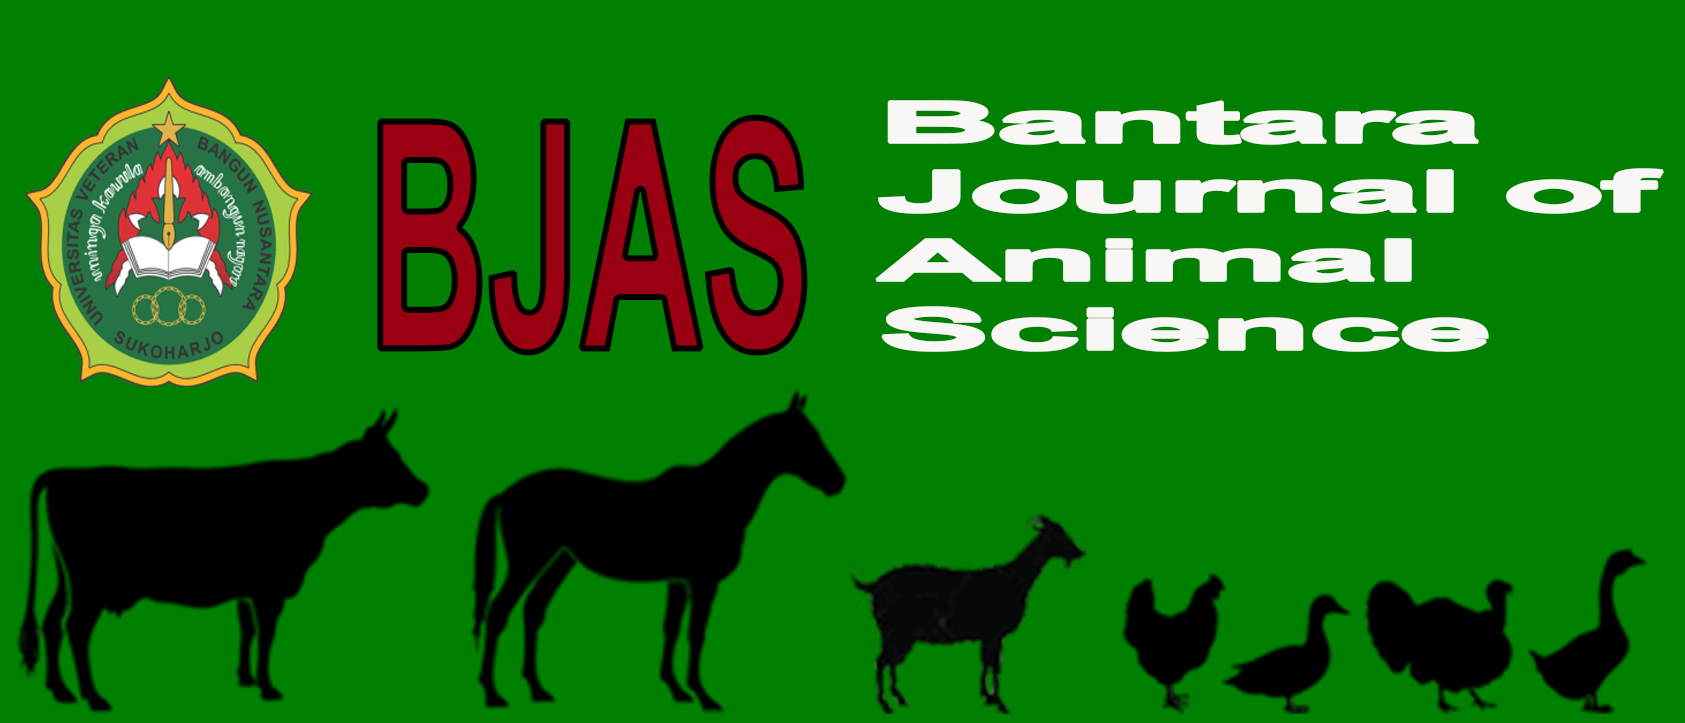 Bantara Journal of Animal Science